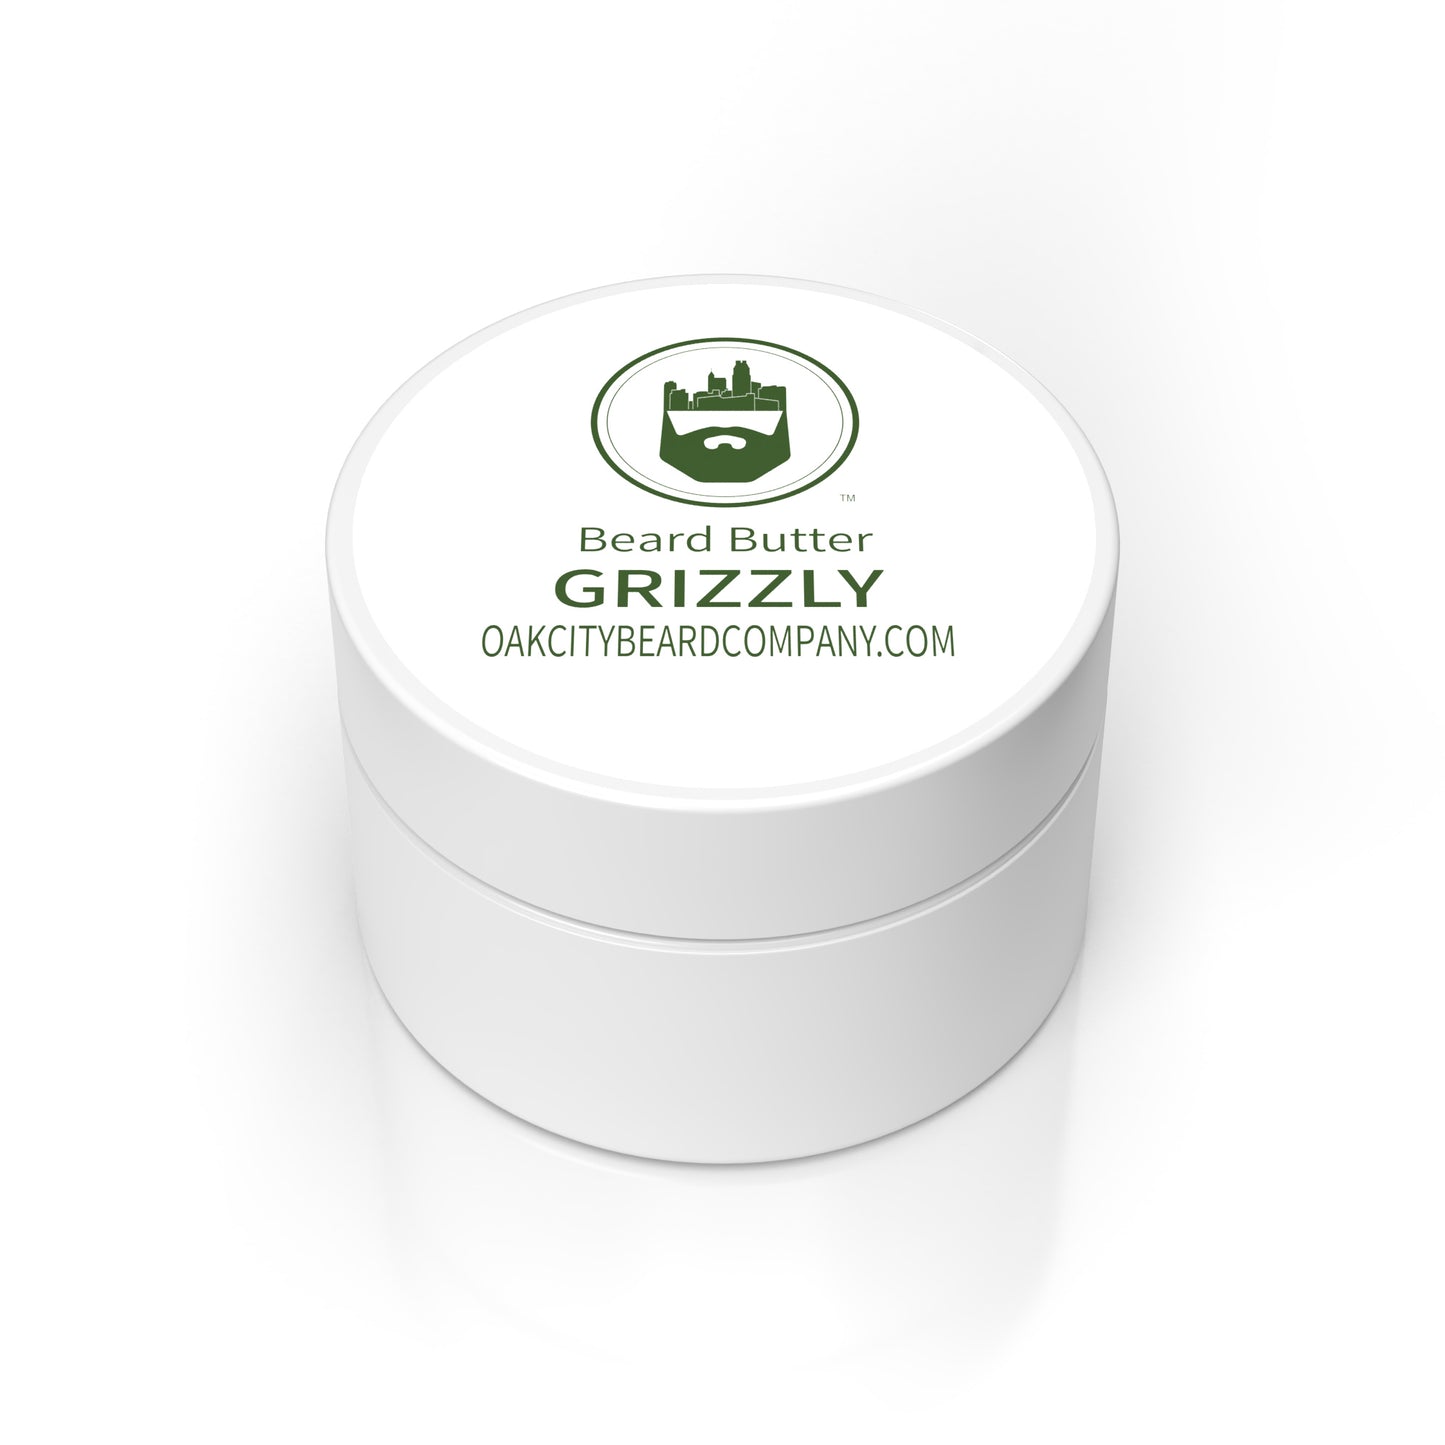 Grizzly (Beard Butter) by Oak City Beard Company